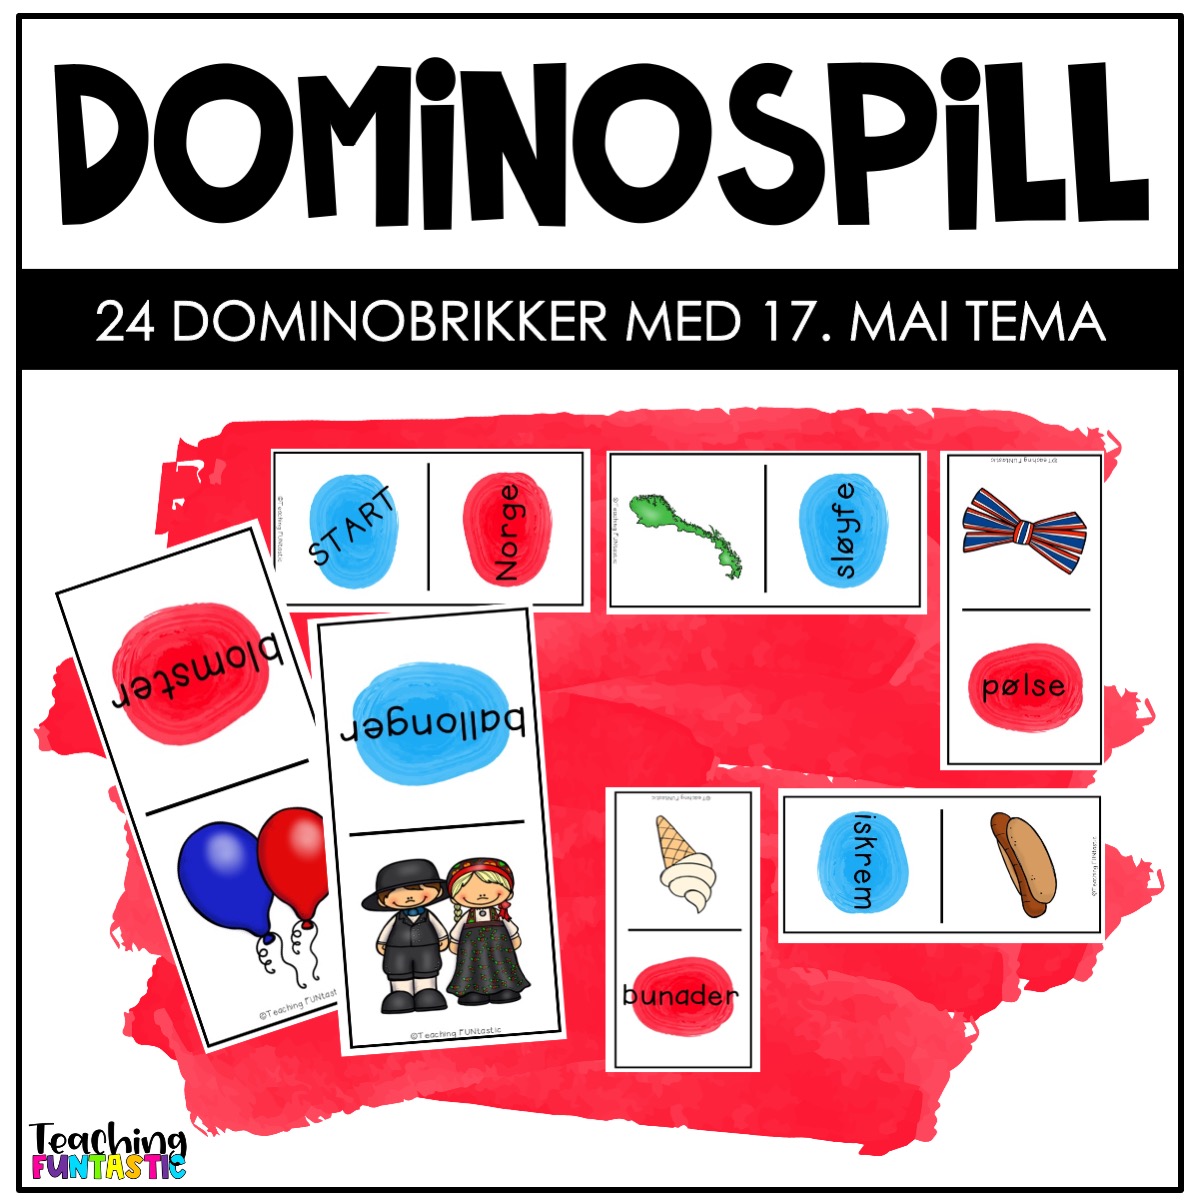 Dominospill 17 mai